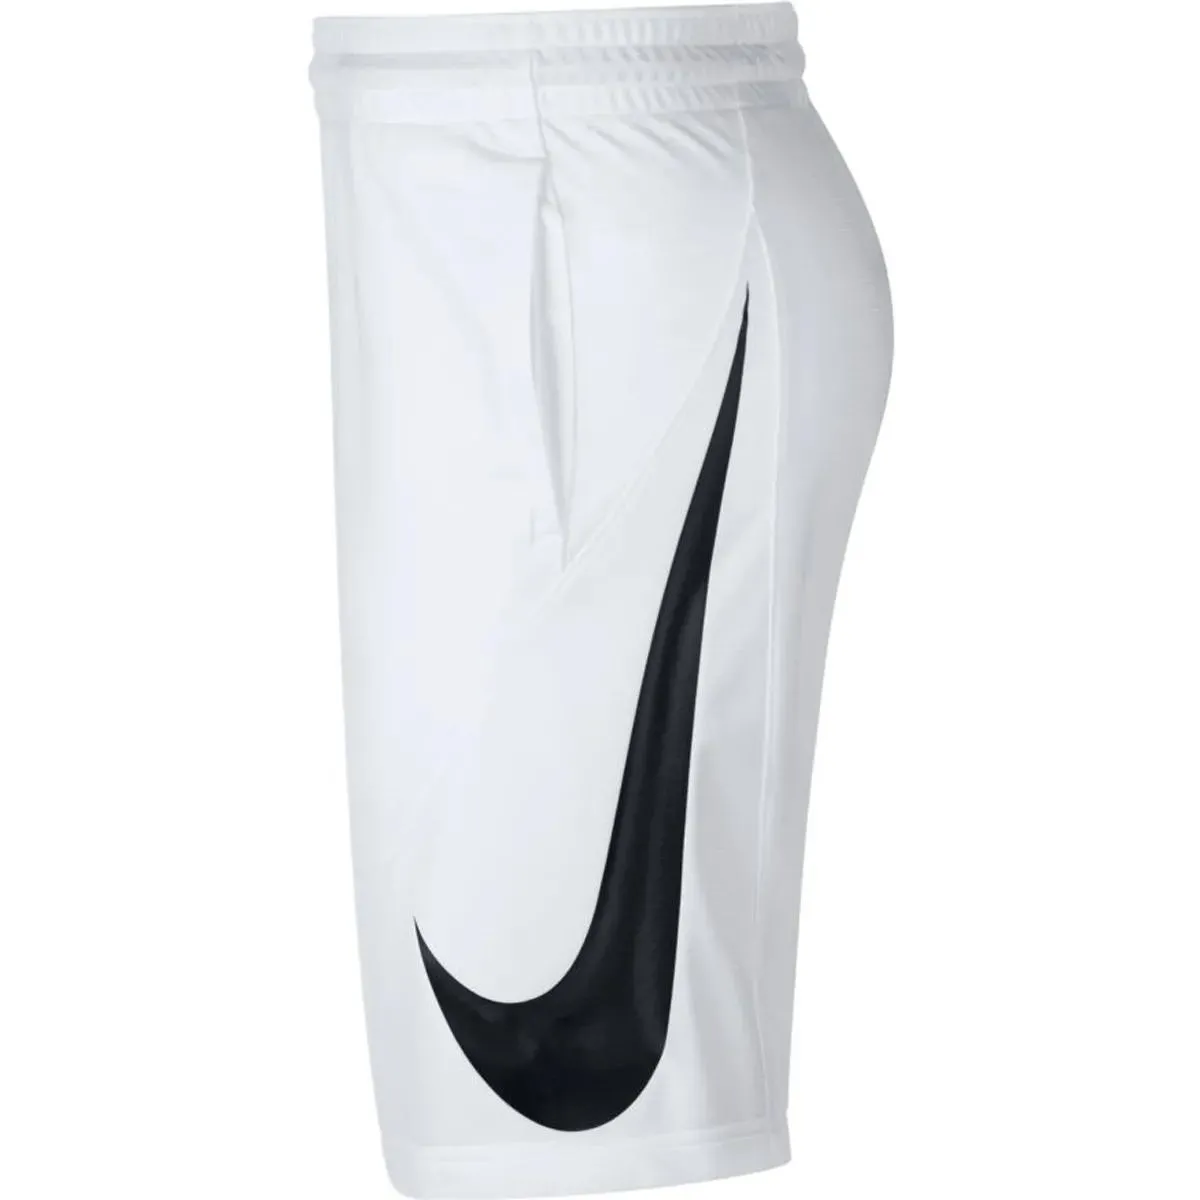 Nike Kratke hlače NIKE shorts M NK HBR 